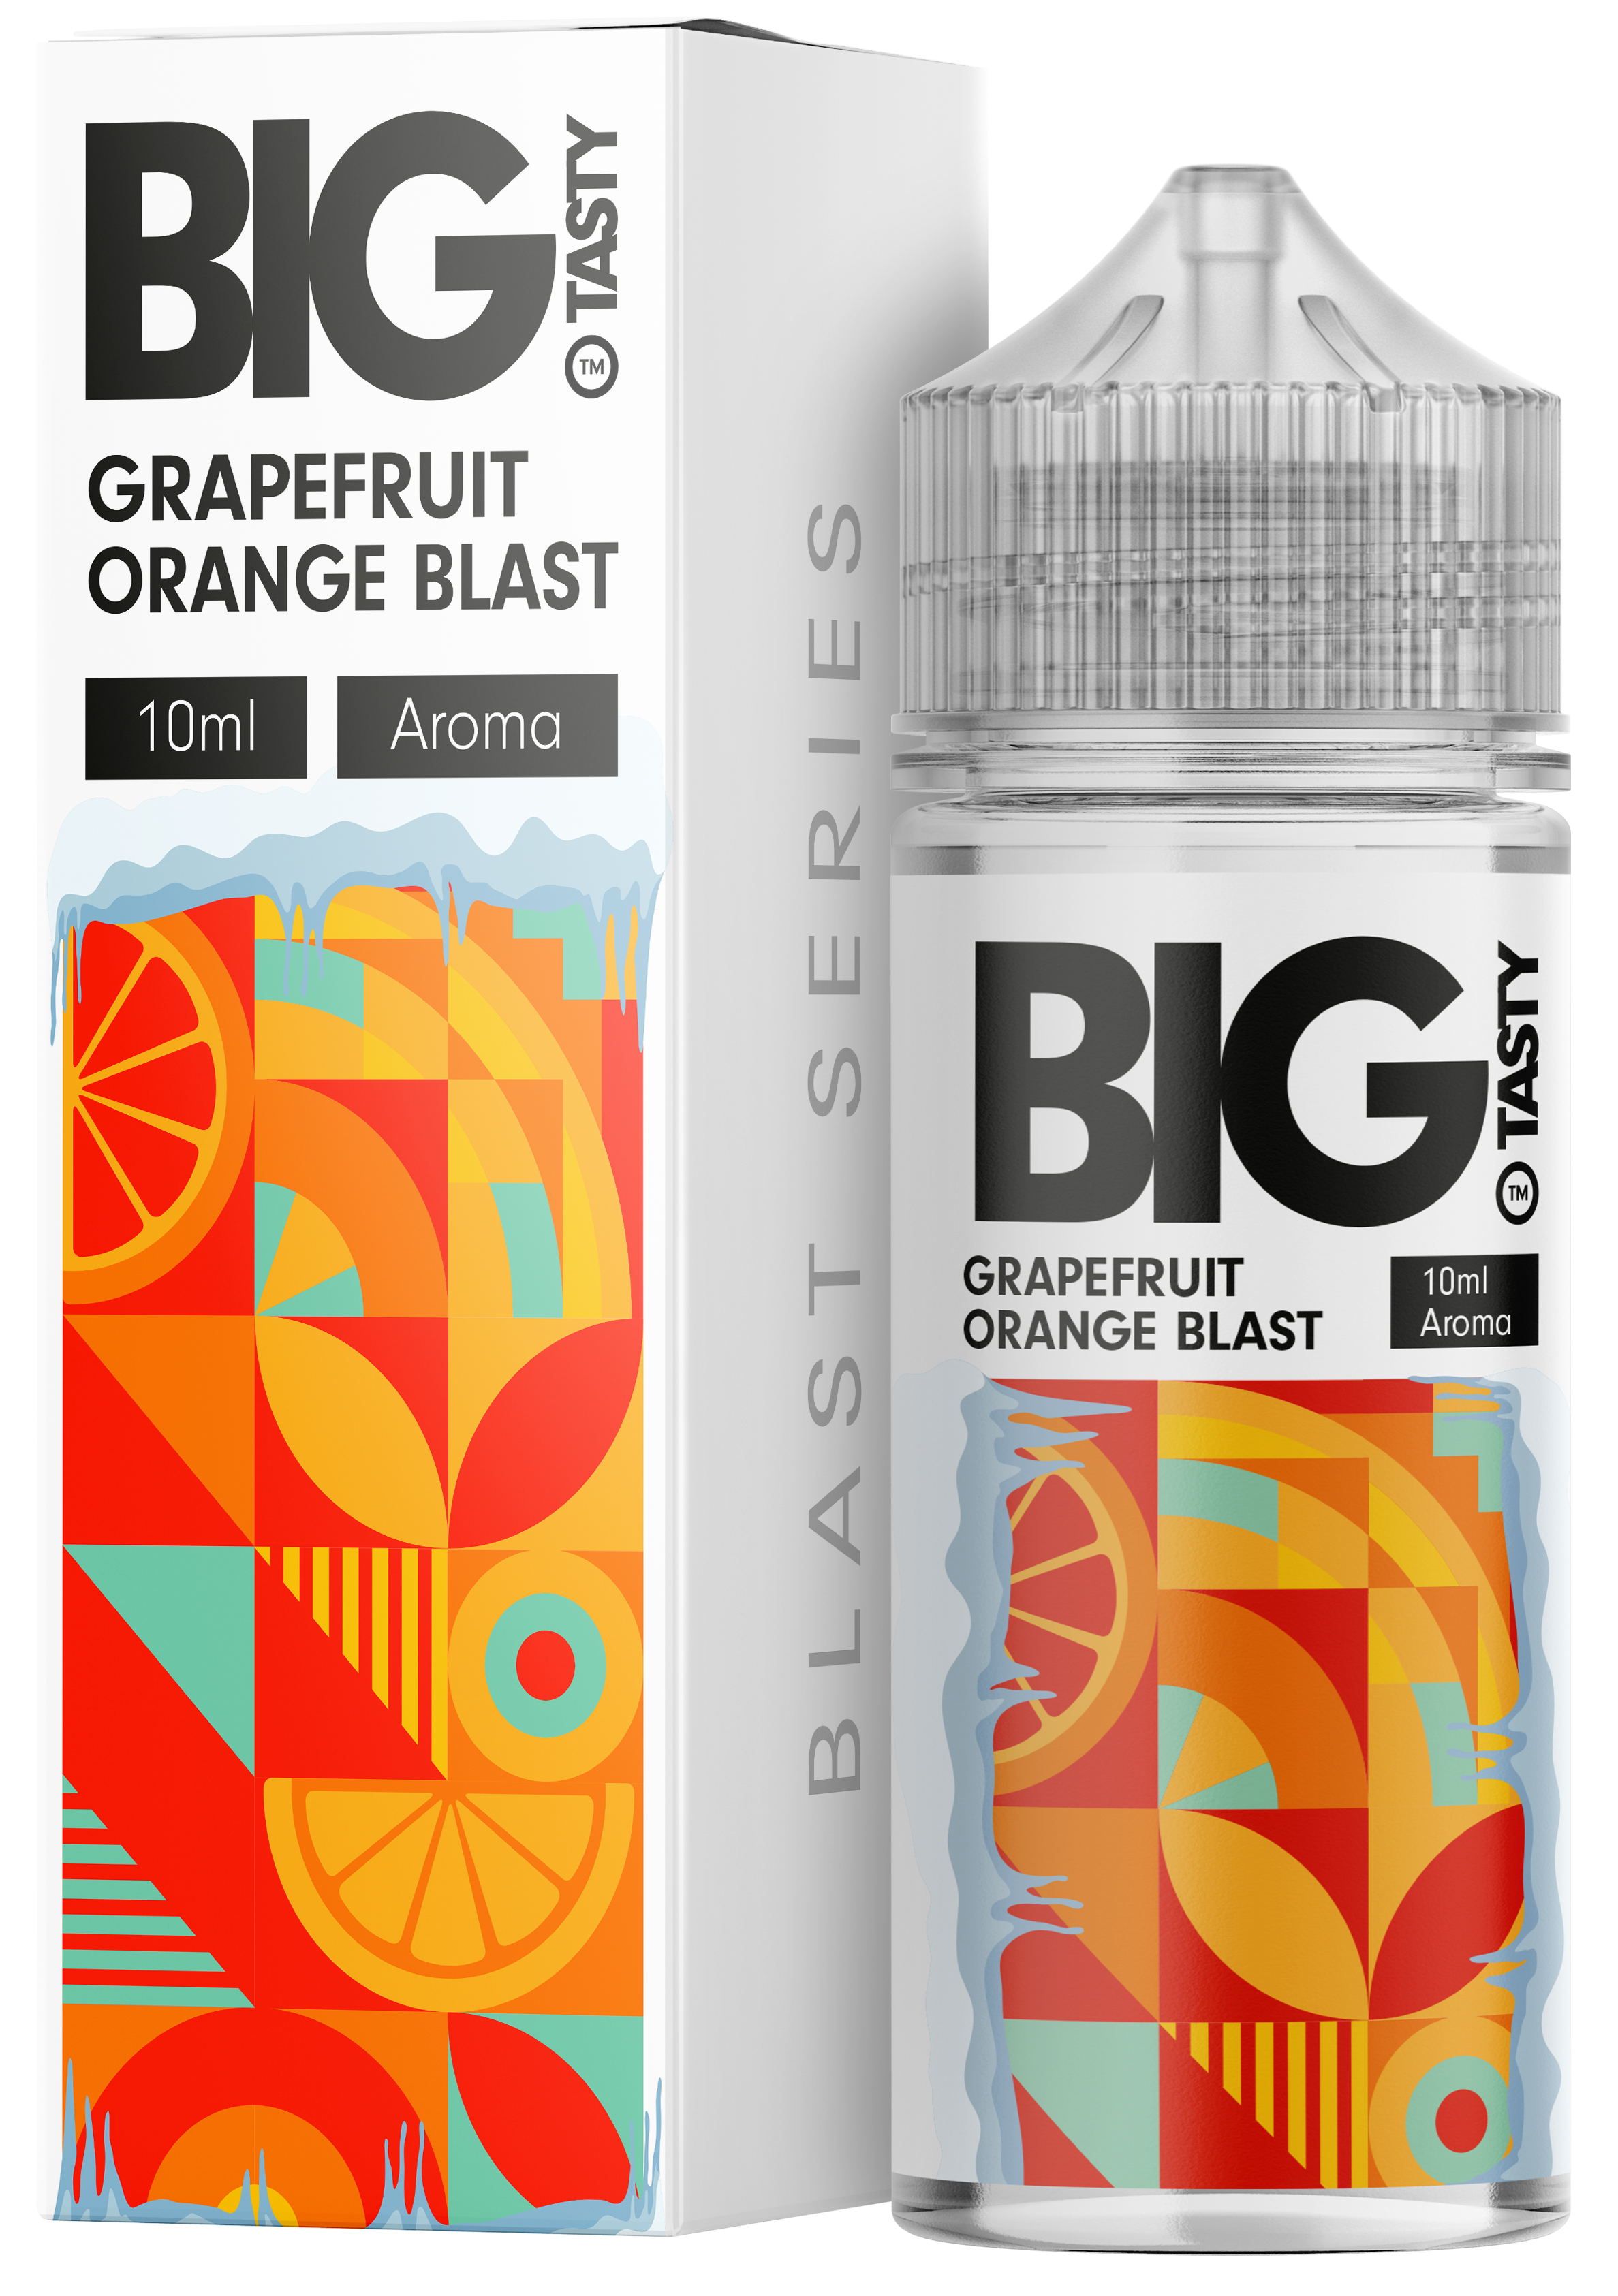 Big Tasty - Grapefruit Orange Blast Aroma 10ml